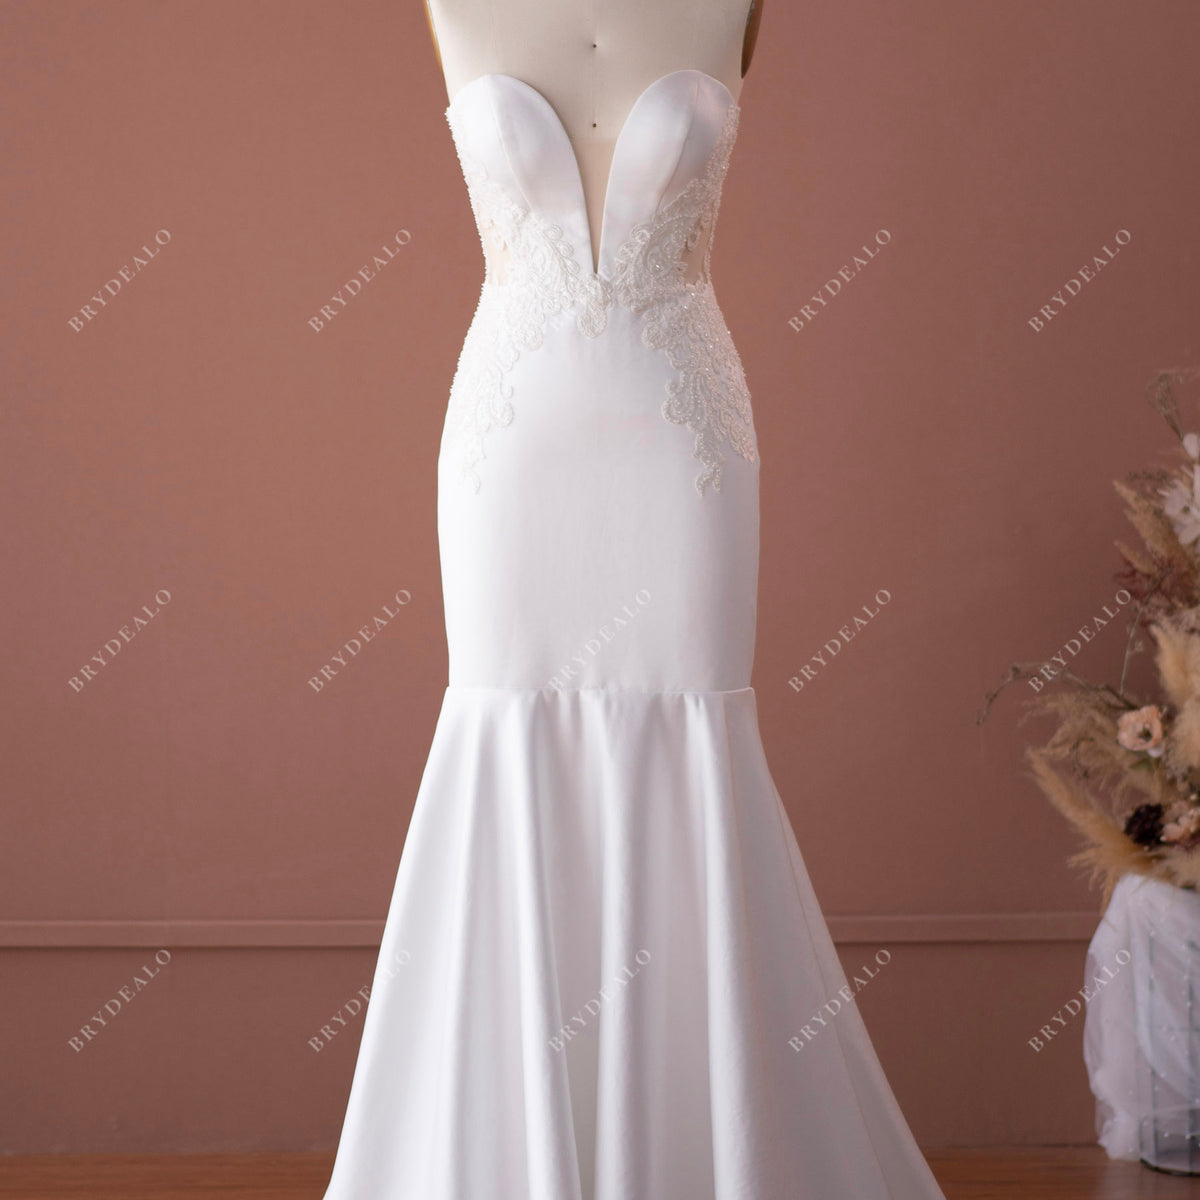 UK White/Ivory Mermaid Lace Beaded Sweetheart Strapless Wedding Dress Size  6-18 